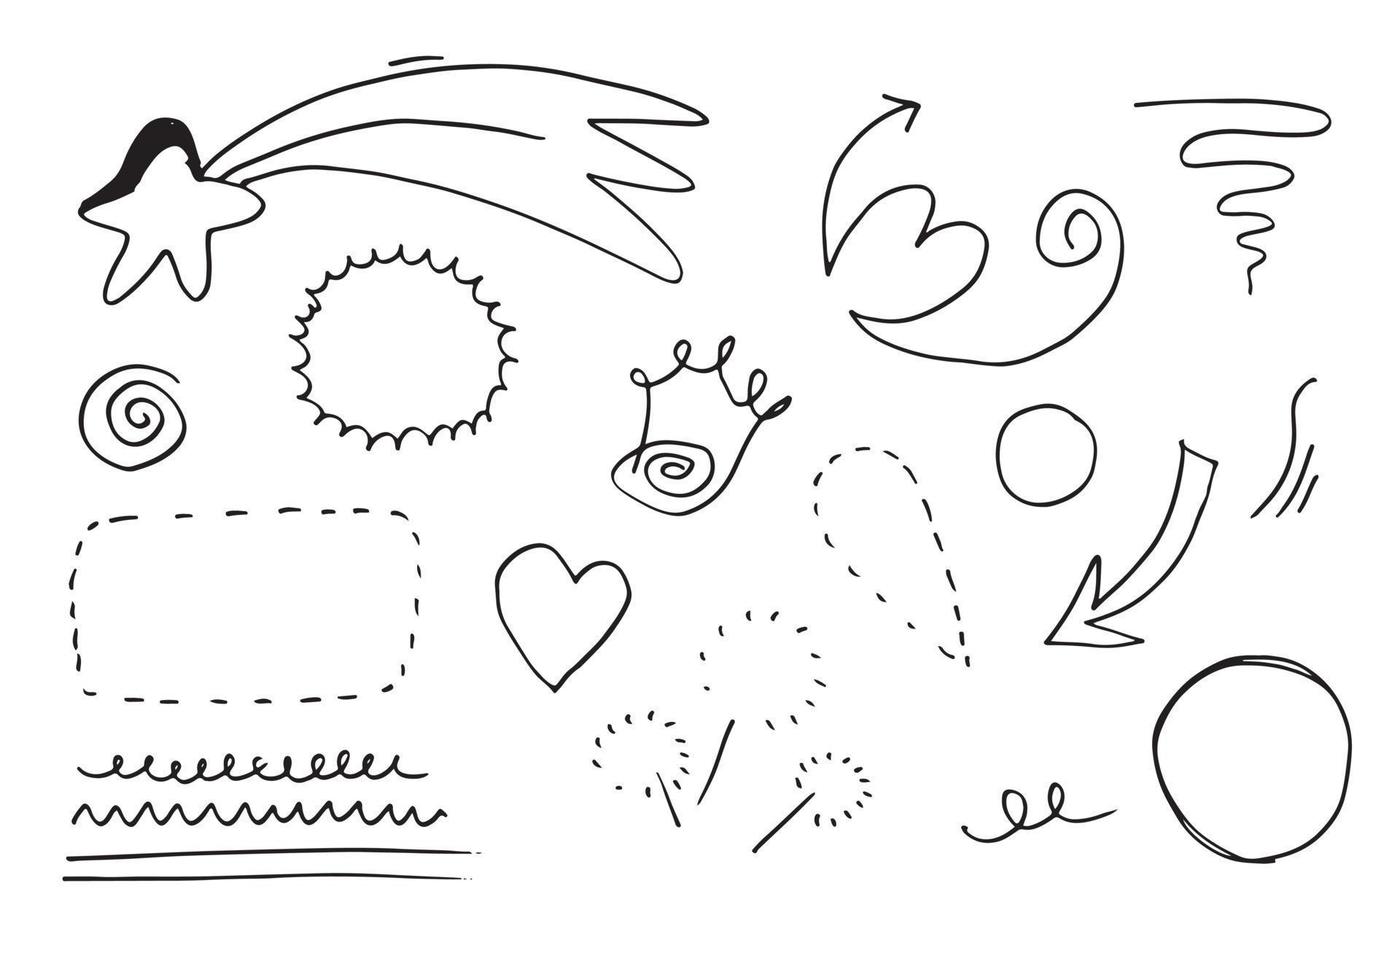 éléments de conception de doodle dessinés à la main, noir sur fond blanc. éléments de conception de croquis de doodle vecteur